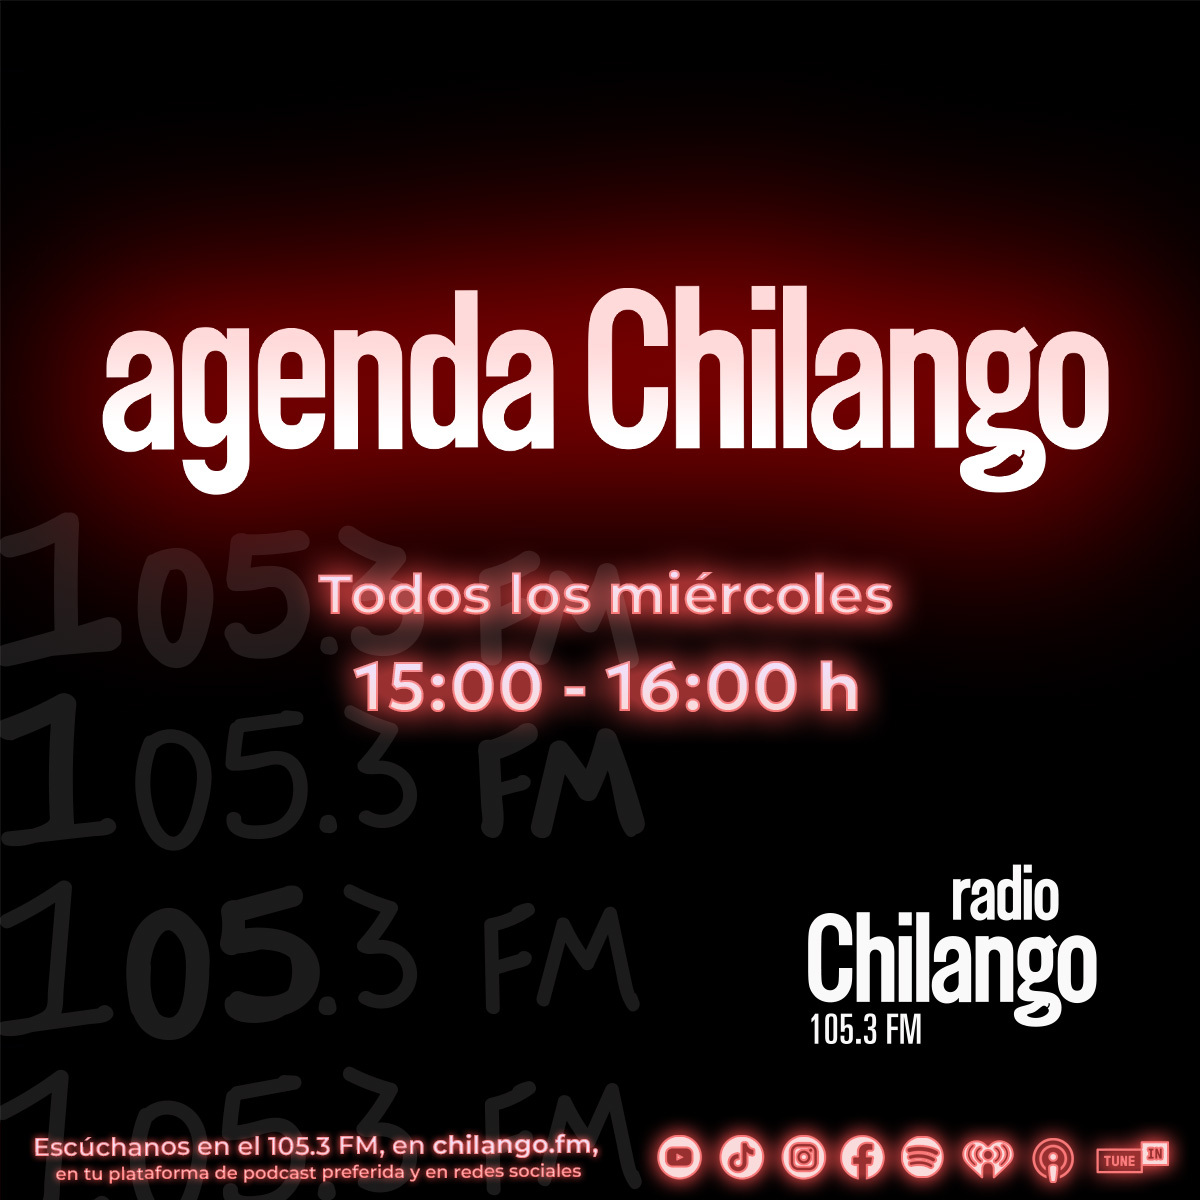 Bandita chilanga, no se pierdan todos los miércoles #AgendaChilango por el 105.3 FM por @radiochilango 😉 Los esperamos con los mejores planes para disfrutar la ciudad. 📻🌶😎